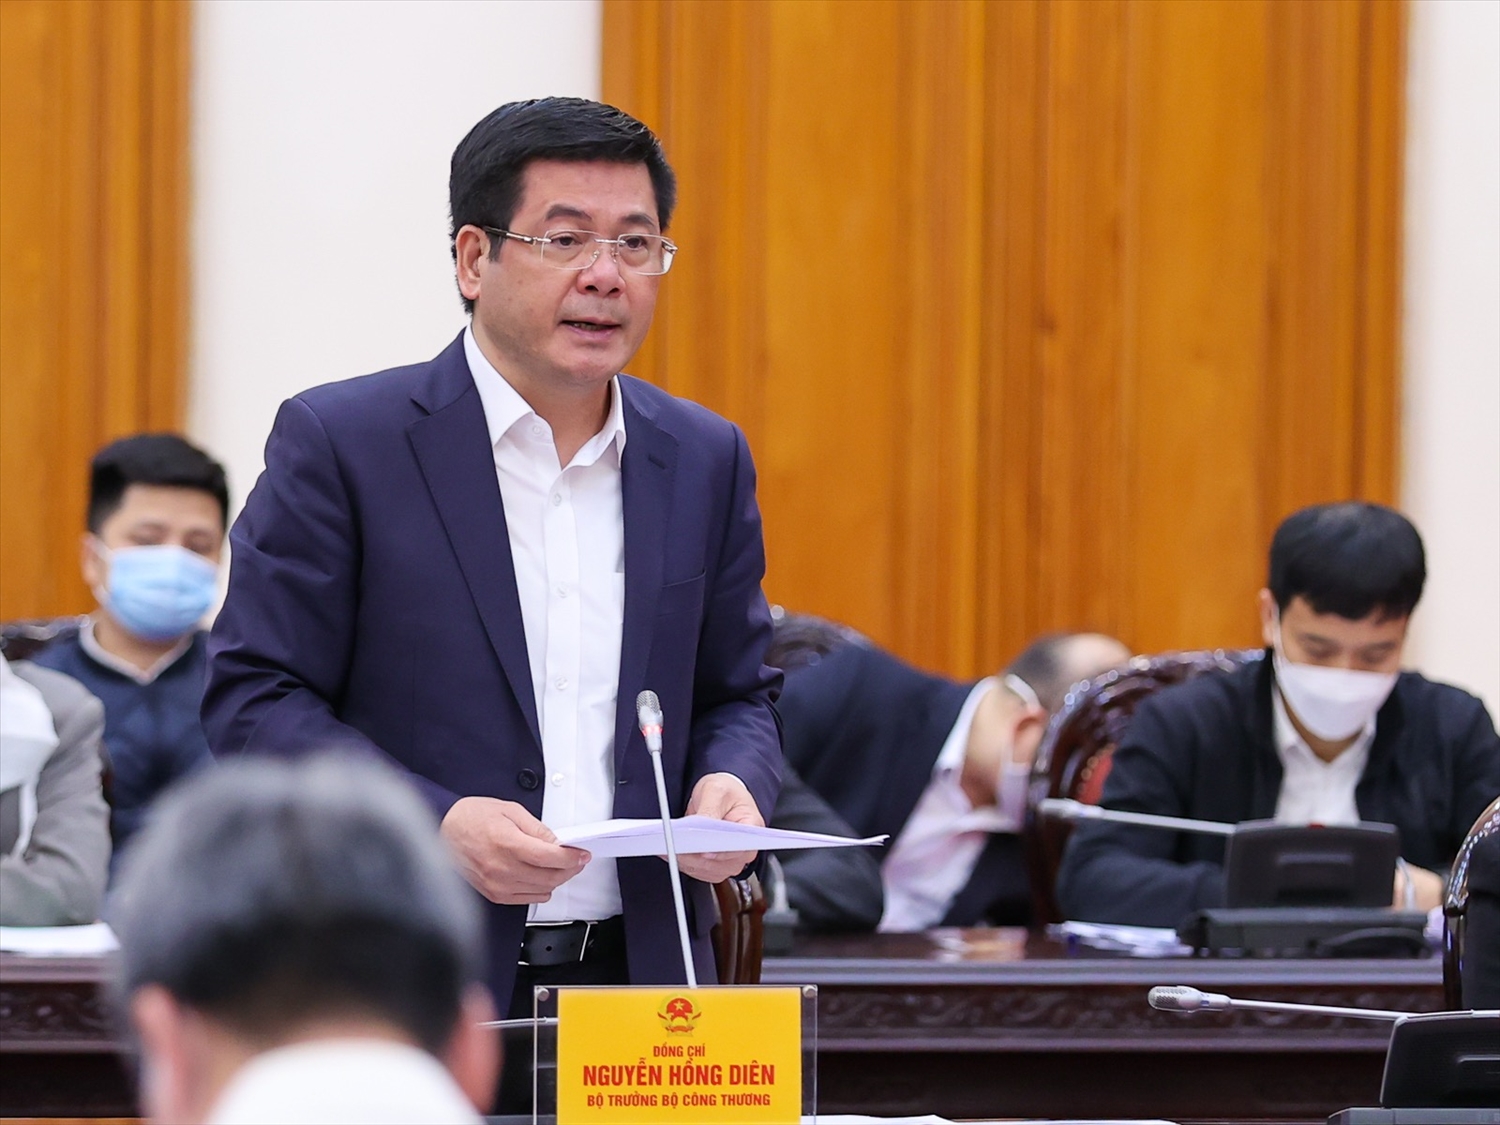 Bộ trưởng Bộ Công Thương Nguyễn Hồng Diên báo cáo tại cuộc họp. Ảnh: VGP/Nhật Bắc